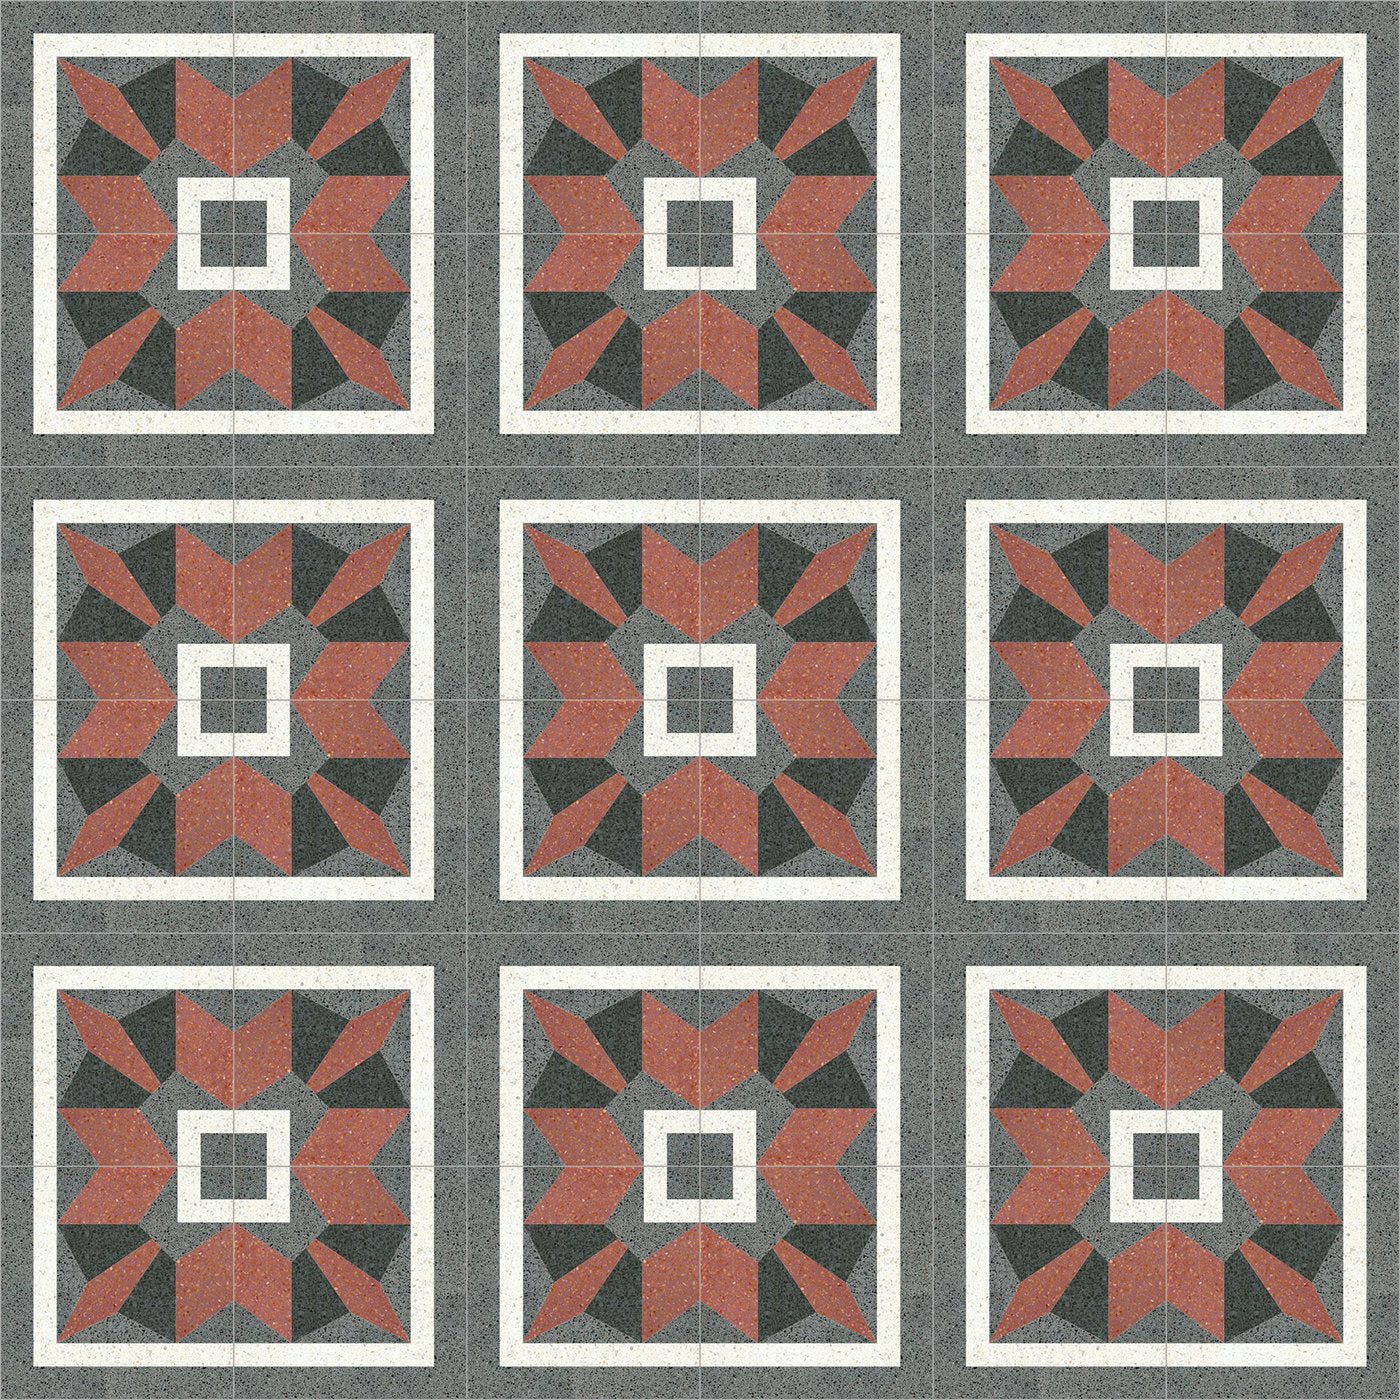 Trapezo Set of 25 Terrazzo Tiles - Alternative view 1